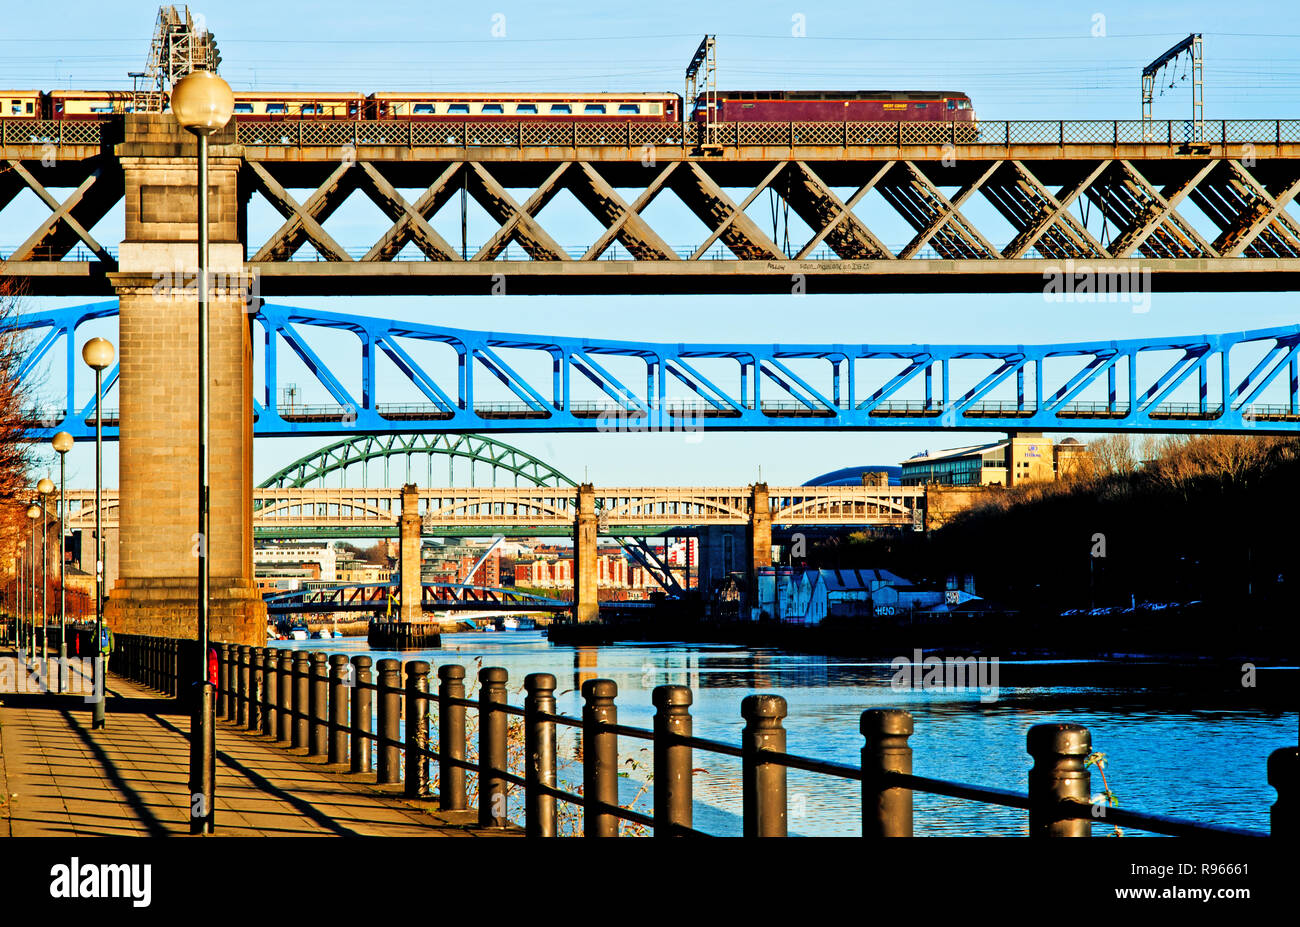 Los ferrocarriles de la costa oeste de tren charter en King Edward Bridge, Newcastle upon Tyne, Inglaterra Foto de stock